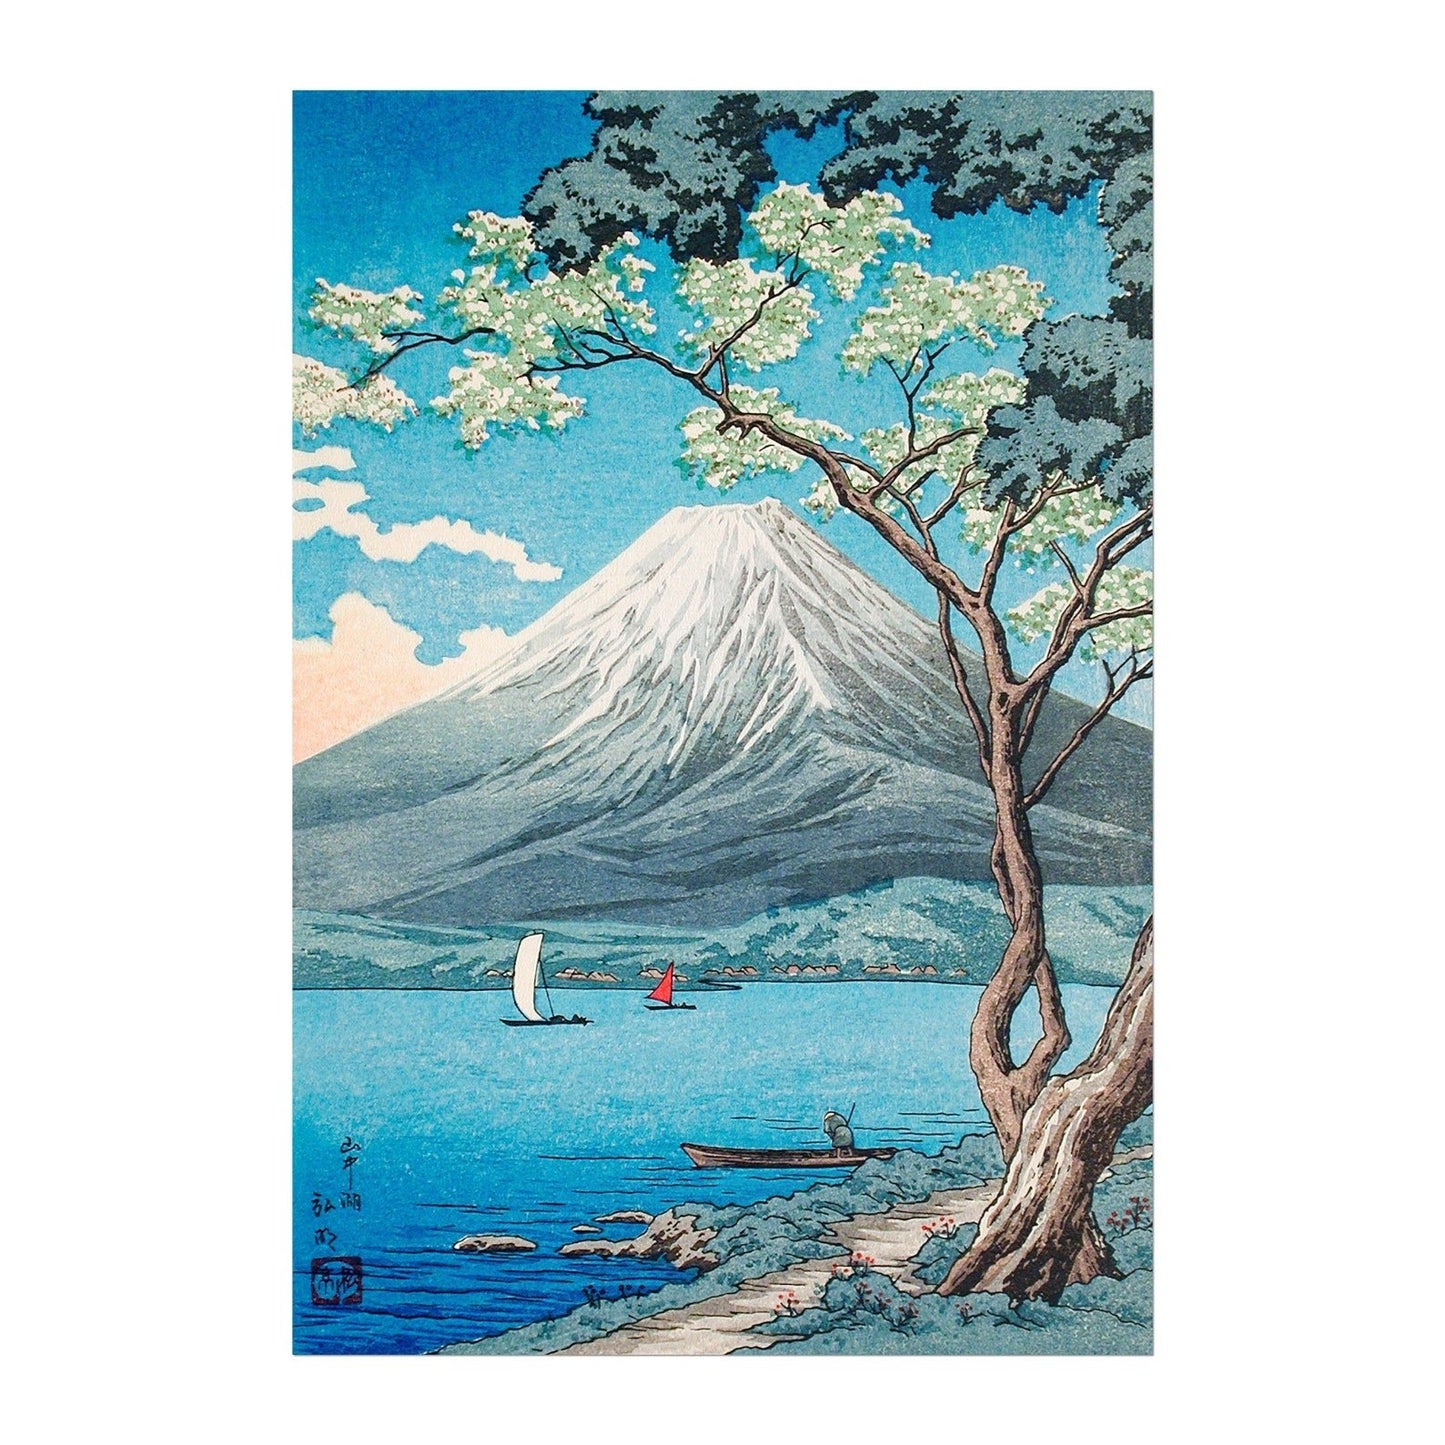 HIROAKI TAKAHASHI - Mount Fuji From Lake Yamanaka - Pathos Studio -